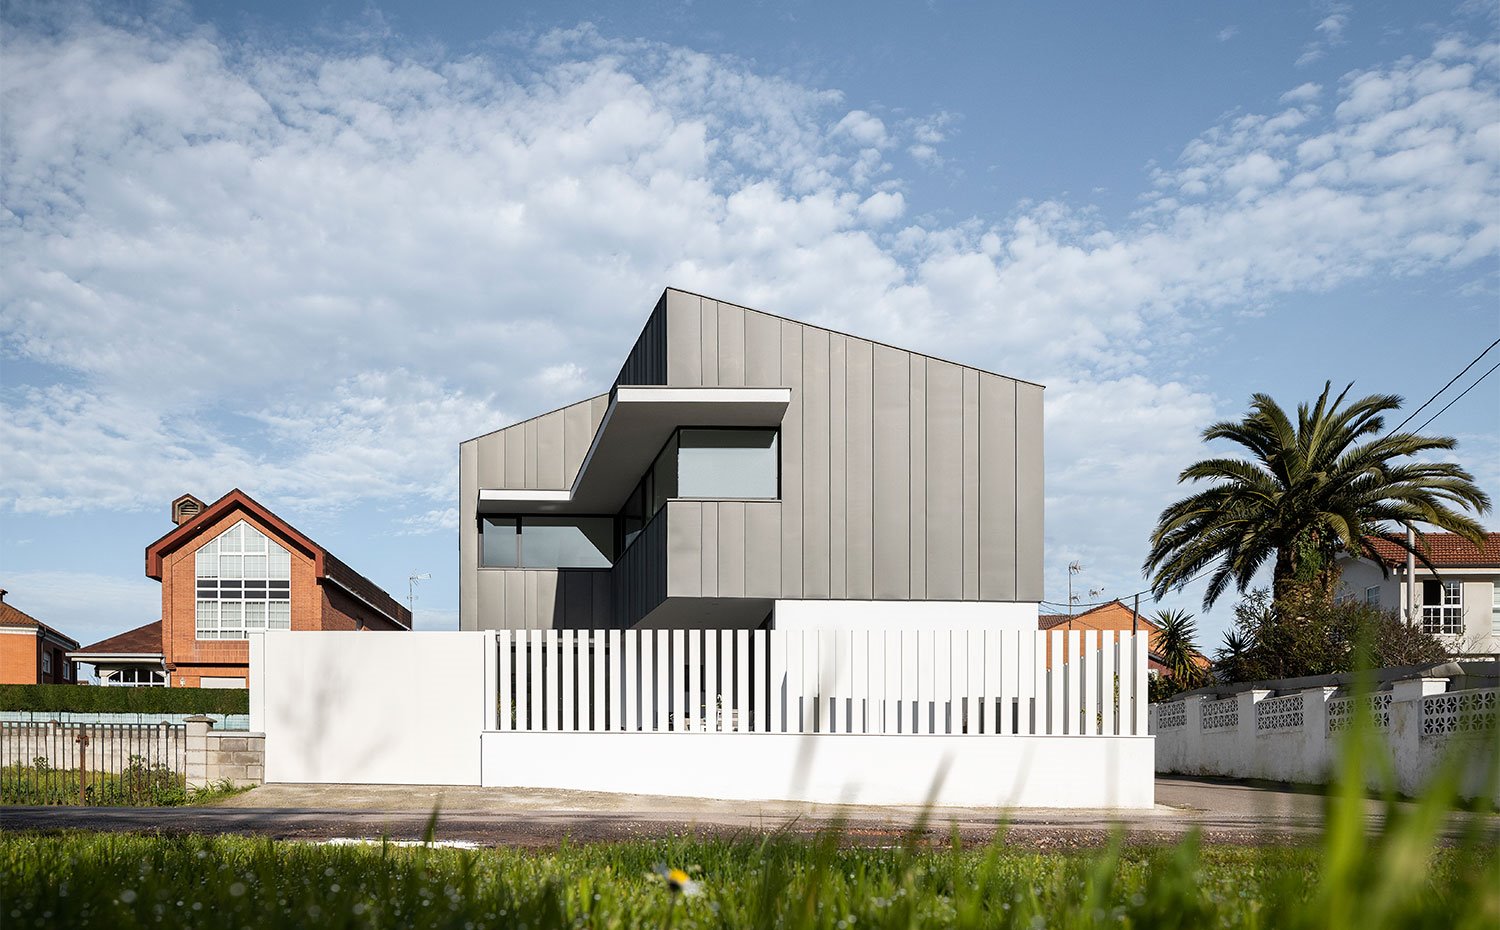 Vista general de vivienda desde calle con fachada sobresaliendo en tonos grisáceos